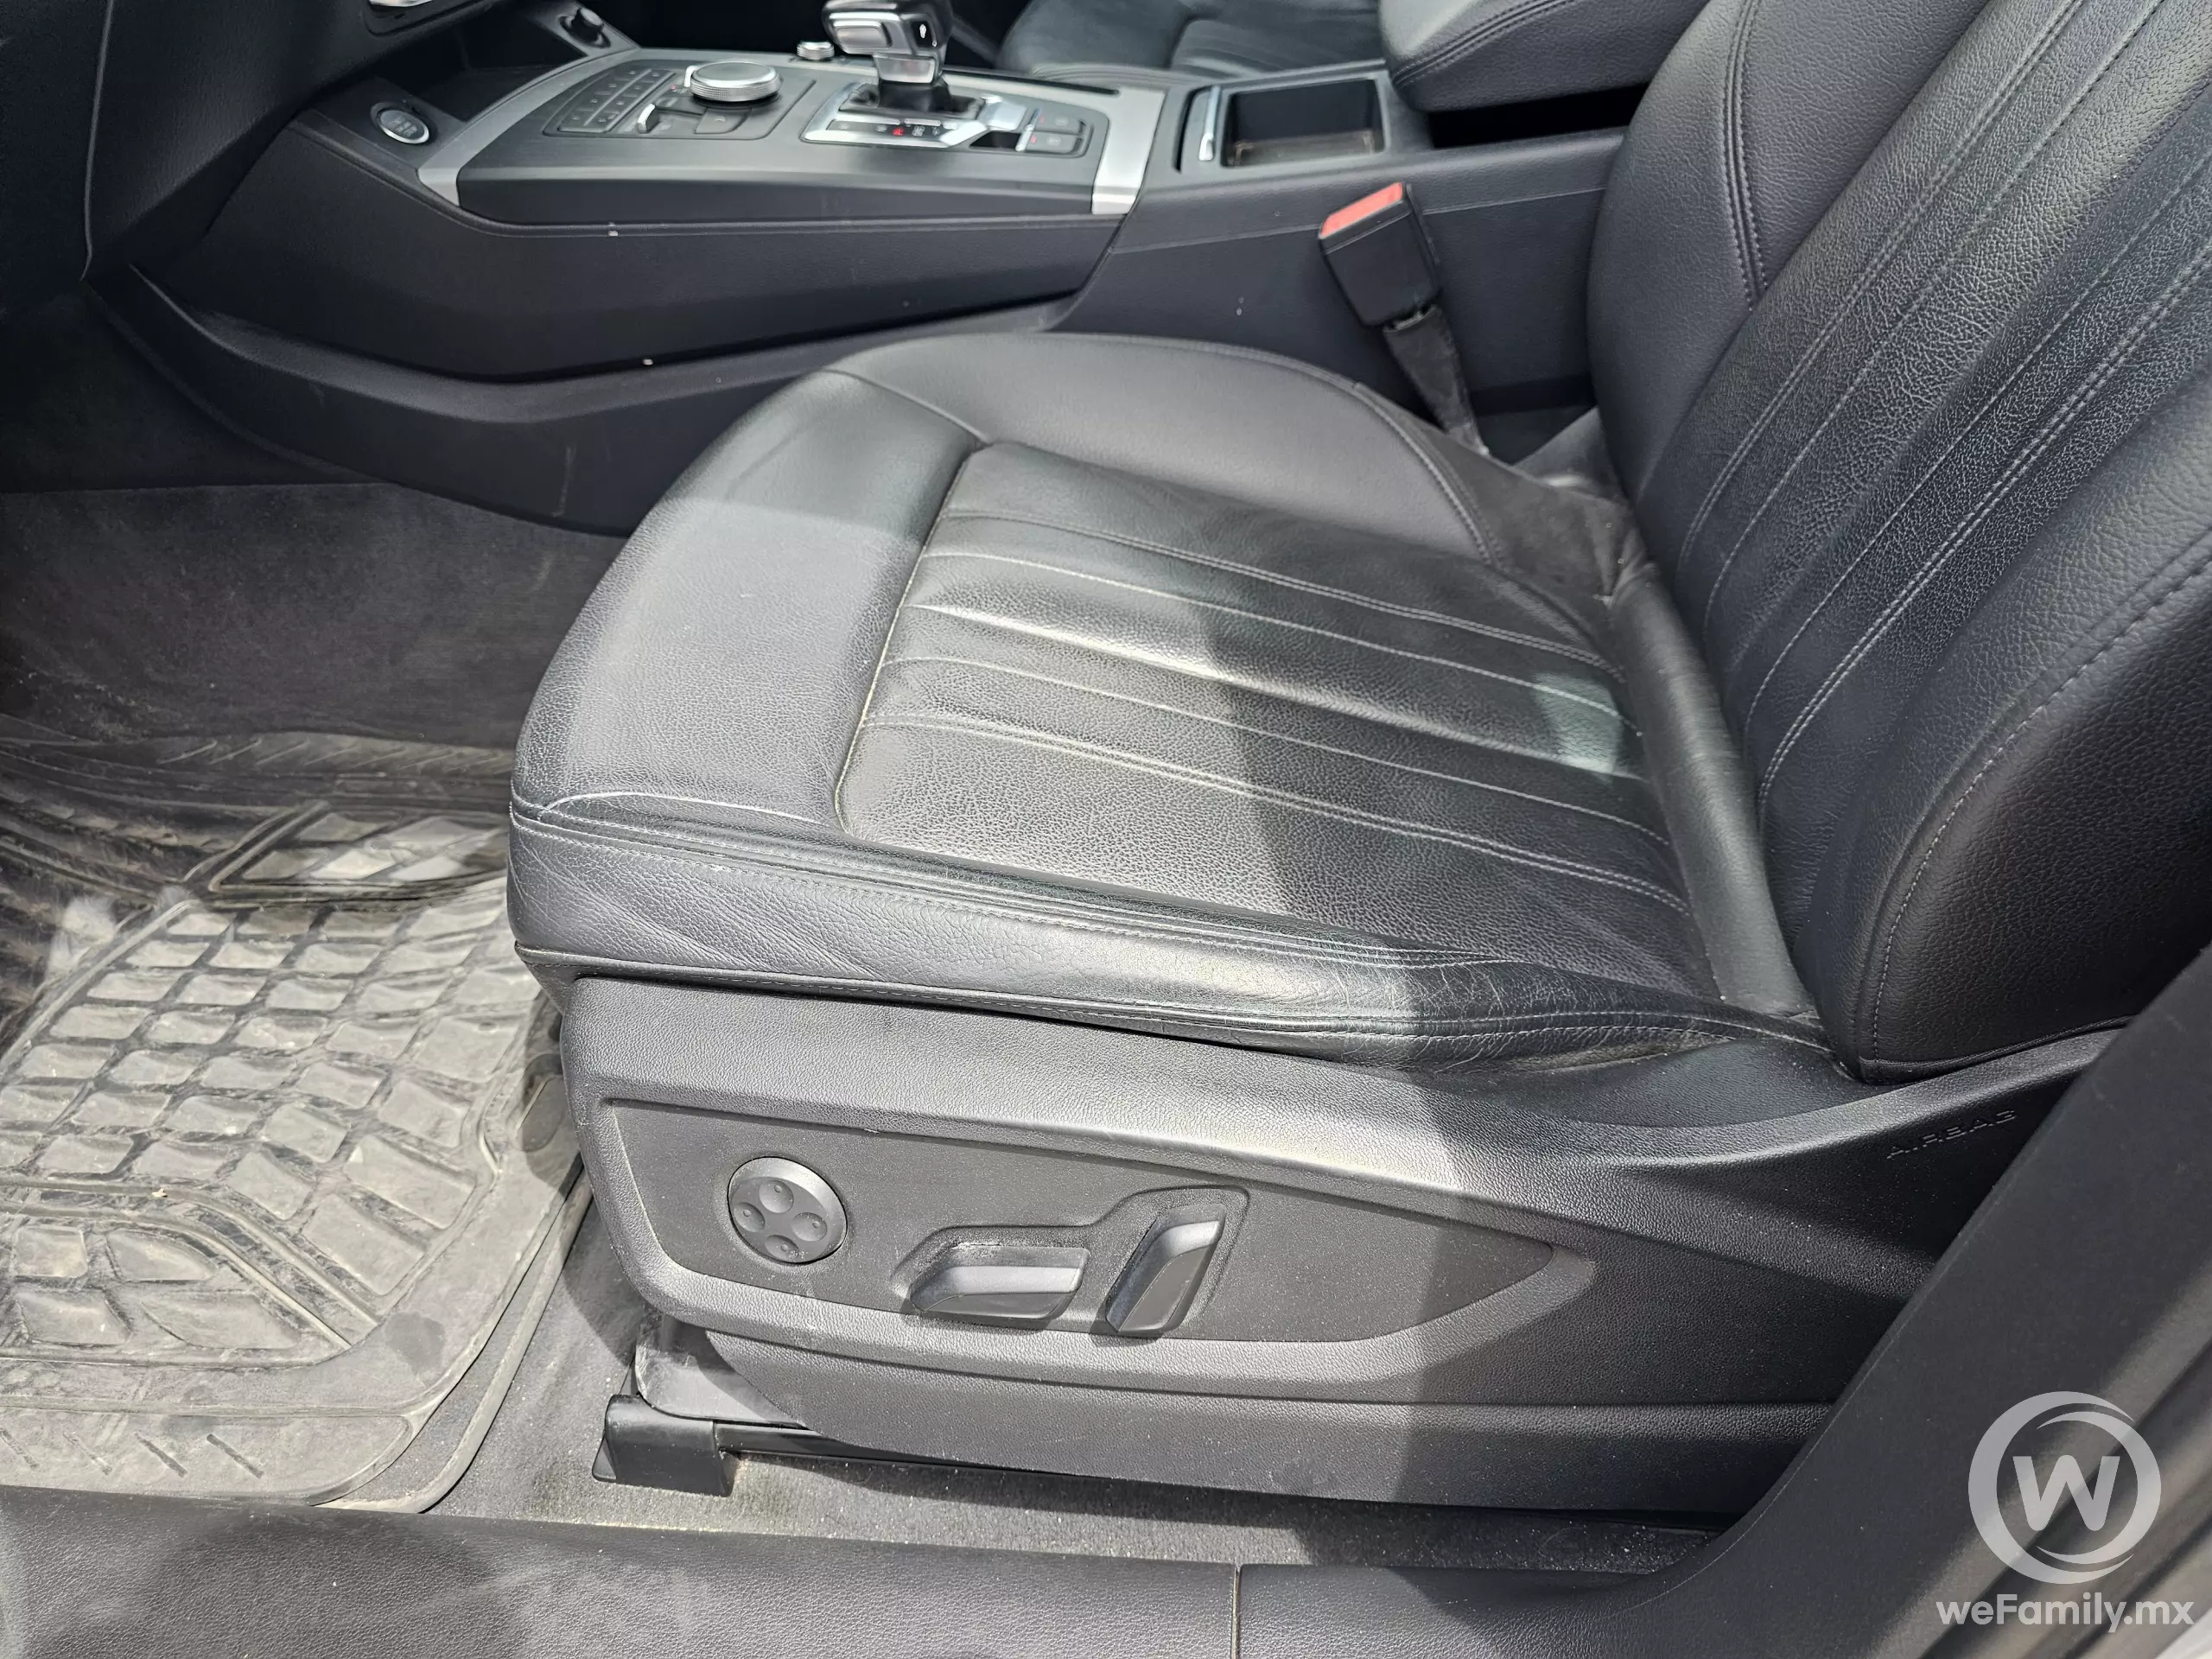 Audi Q5 VUD